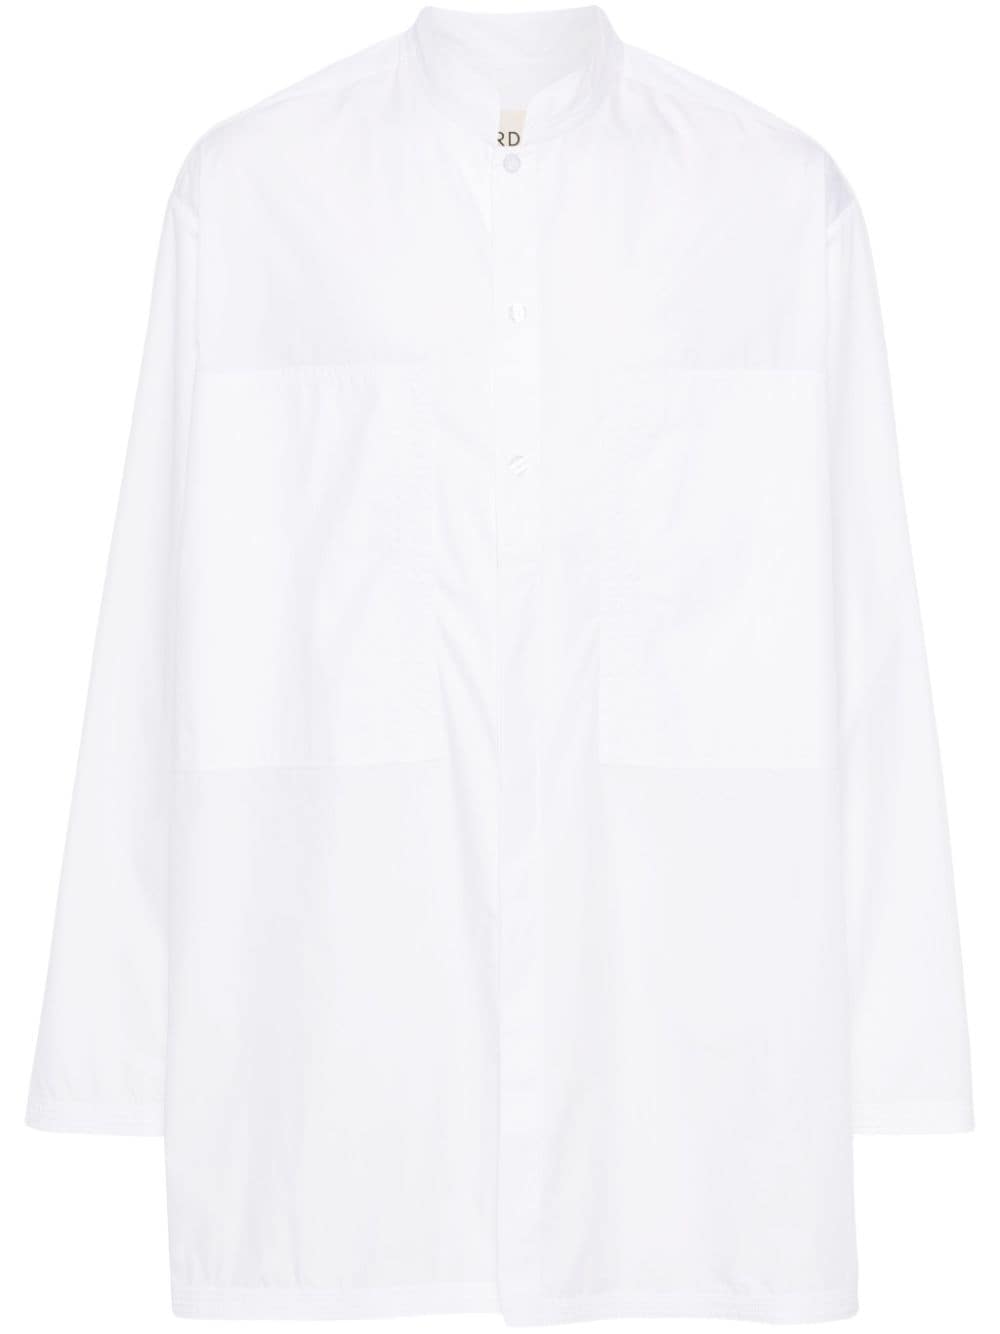 MORDECAI cotton poplin shirt - White von MORDECAI